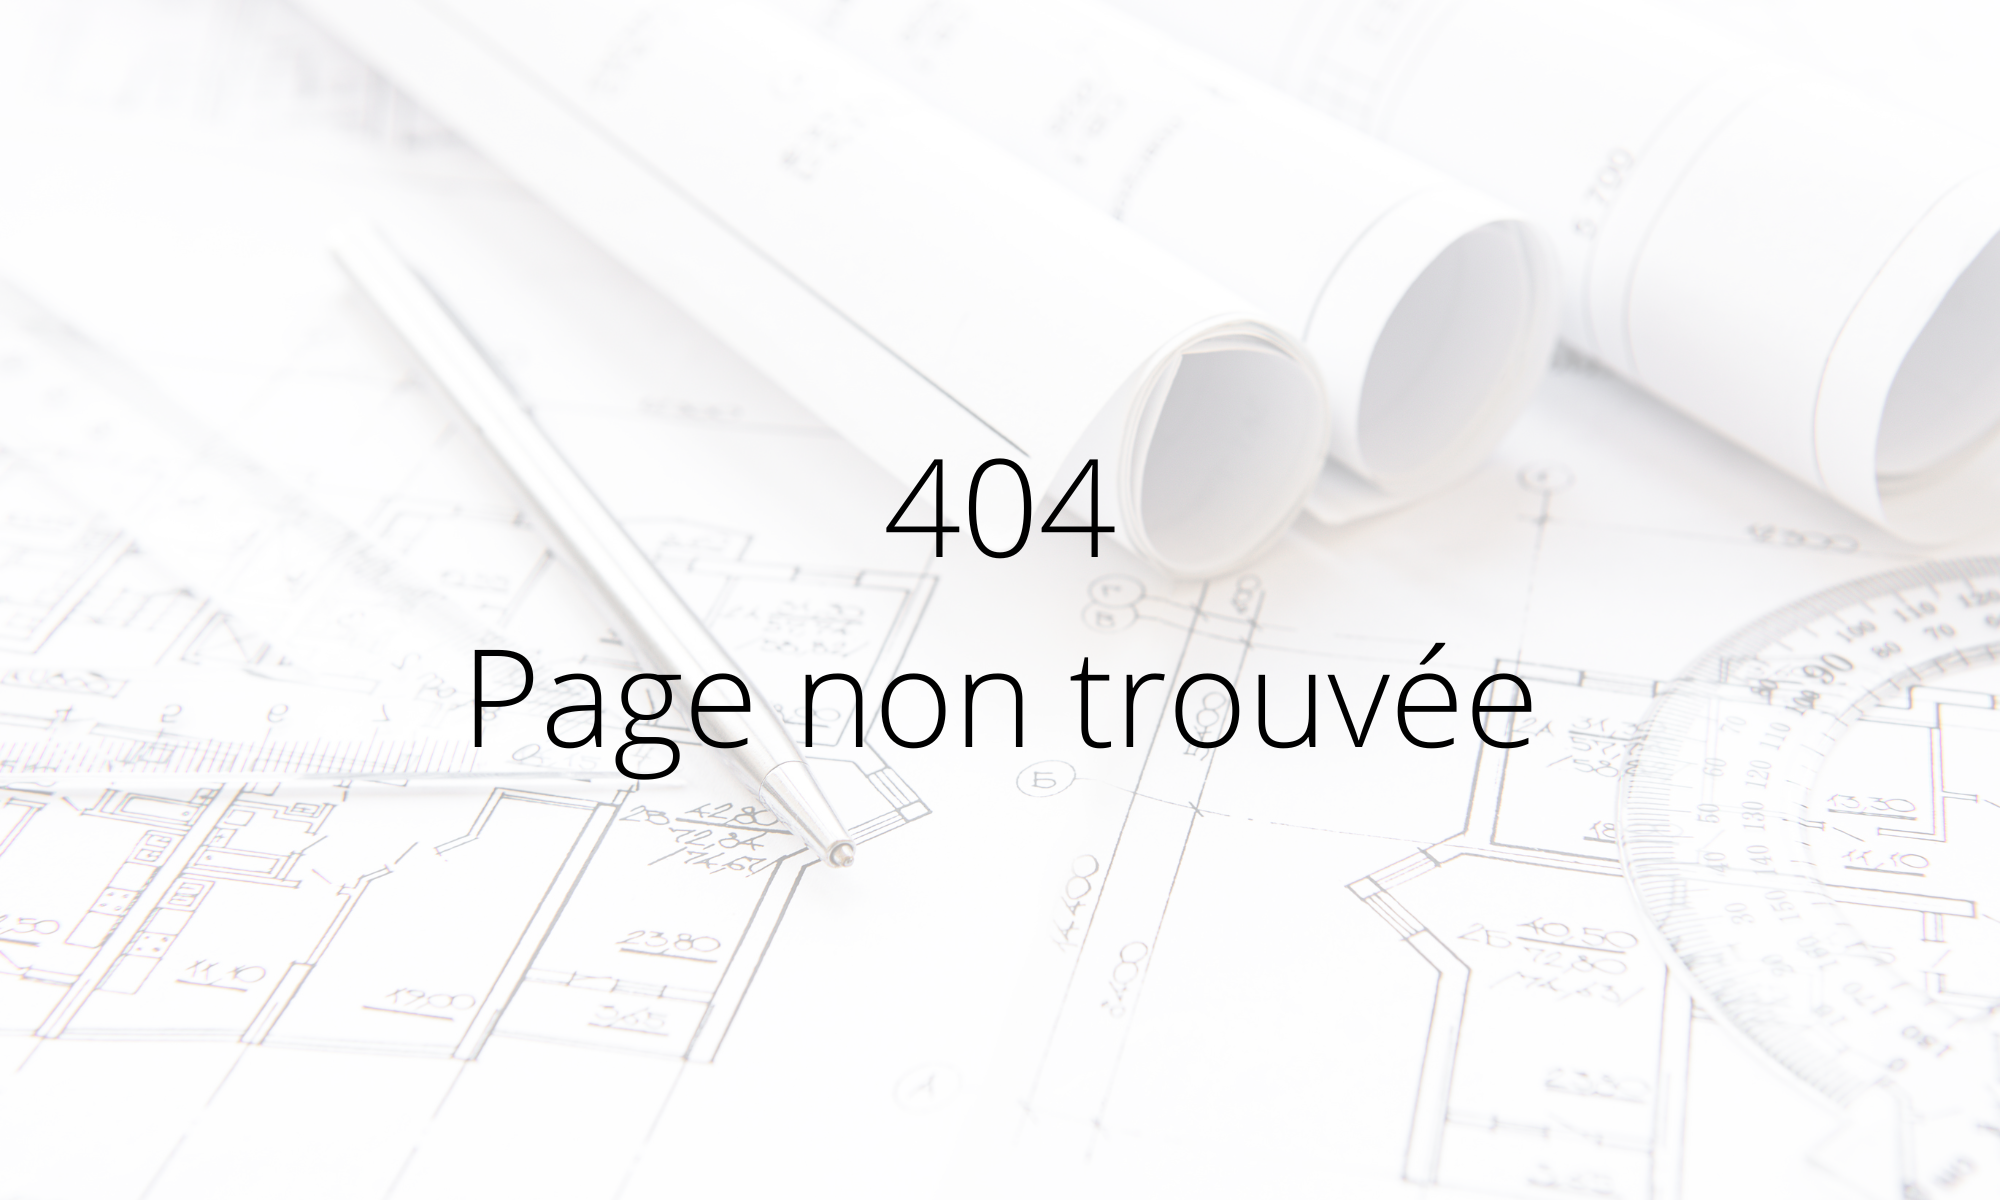 404 Page non trouvée